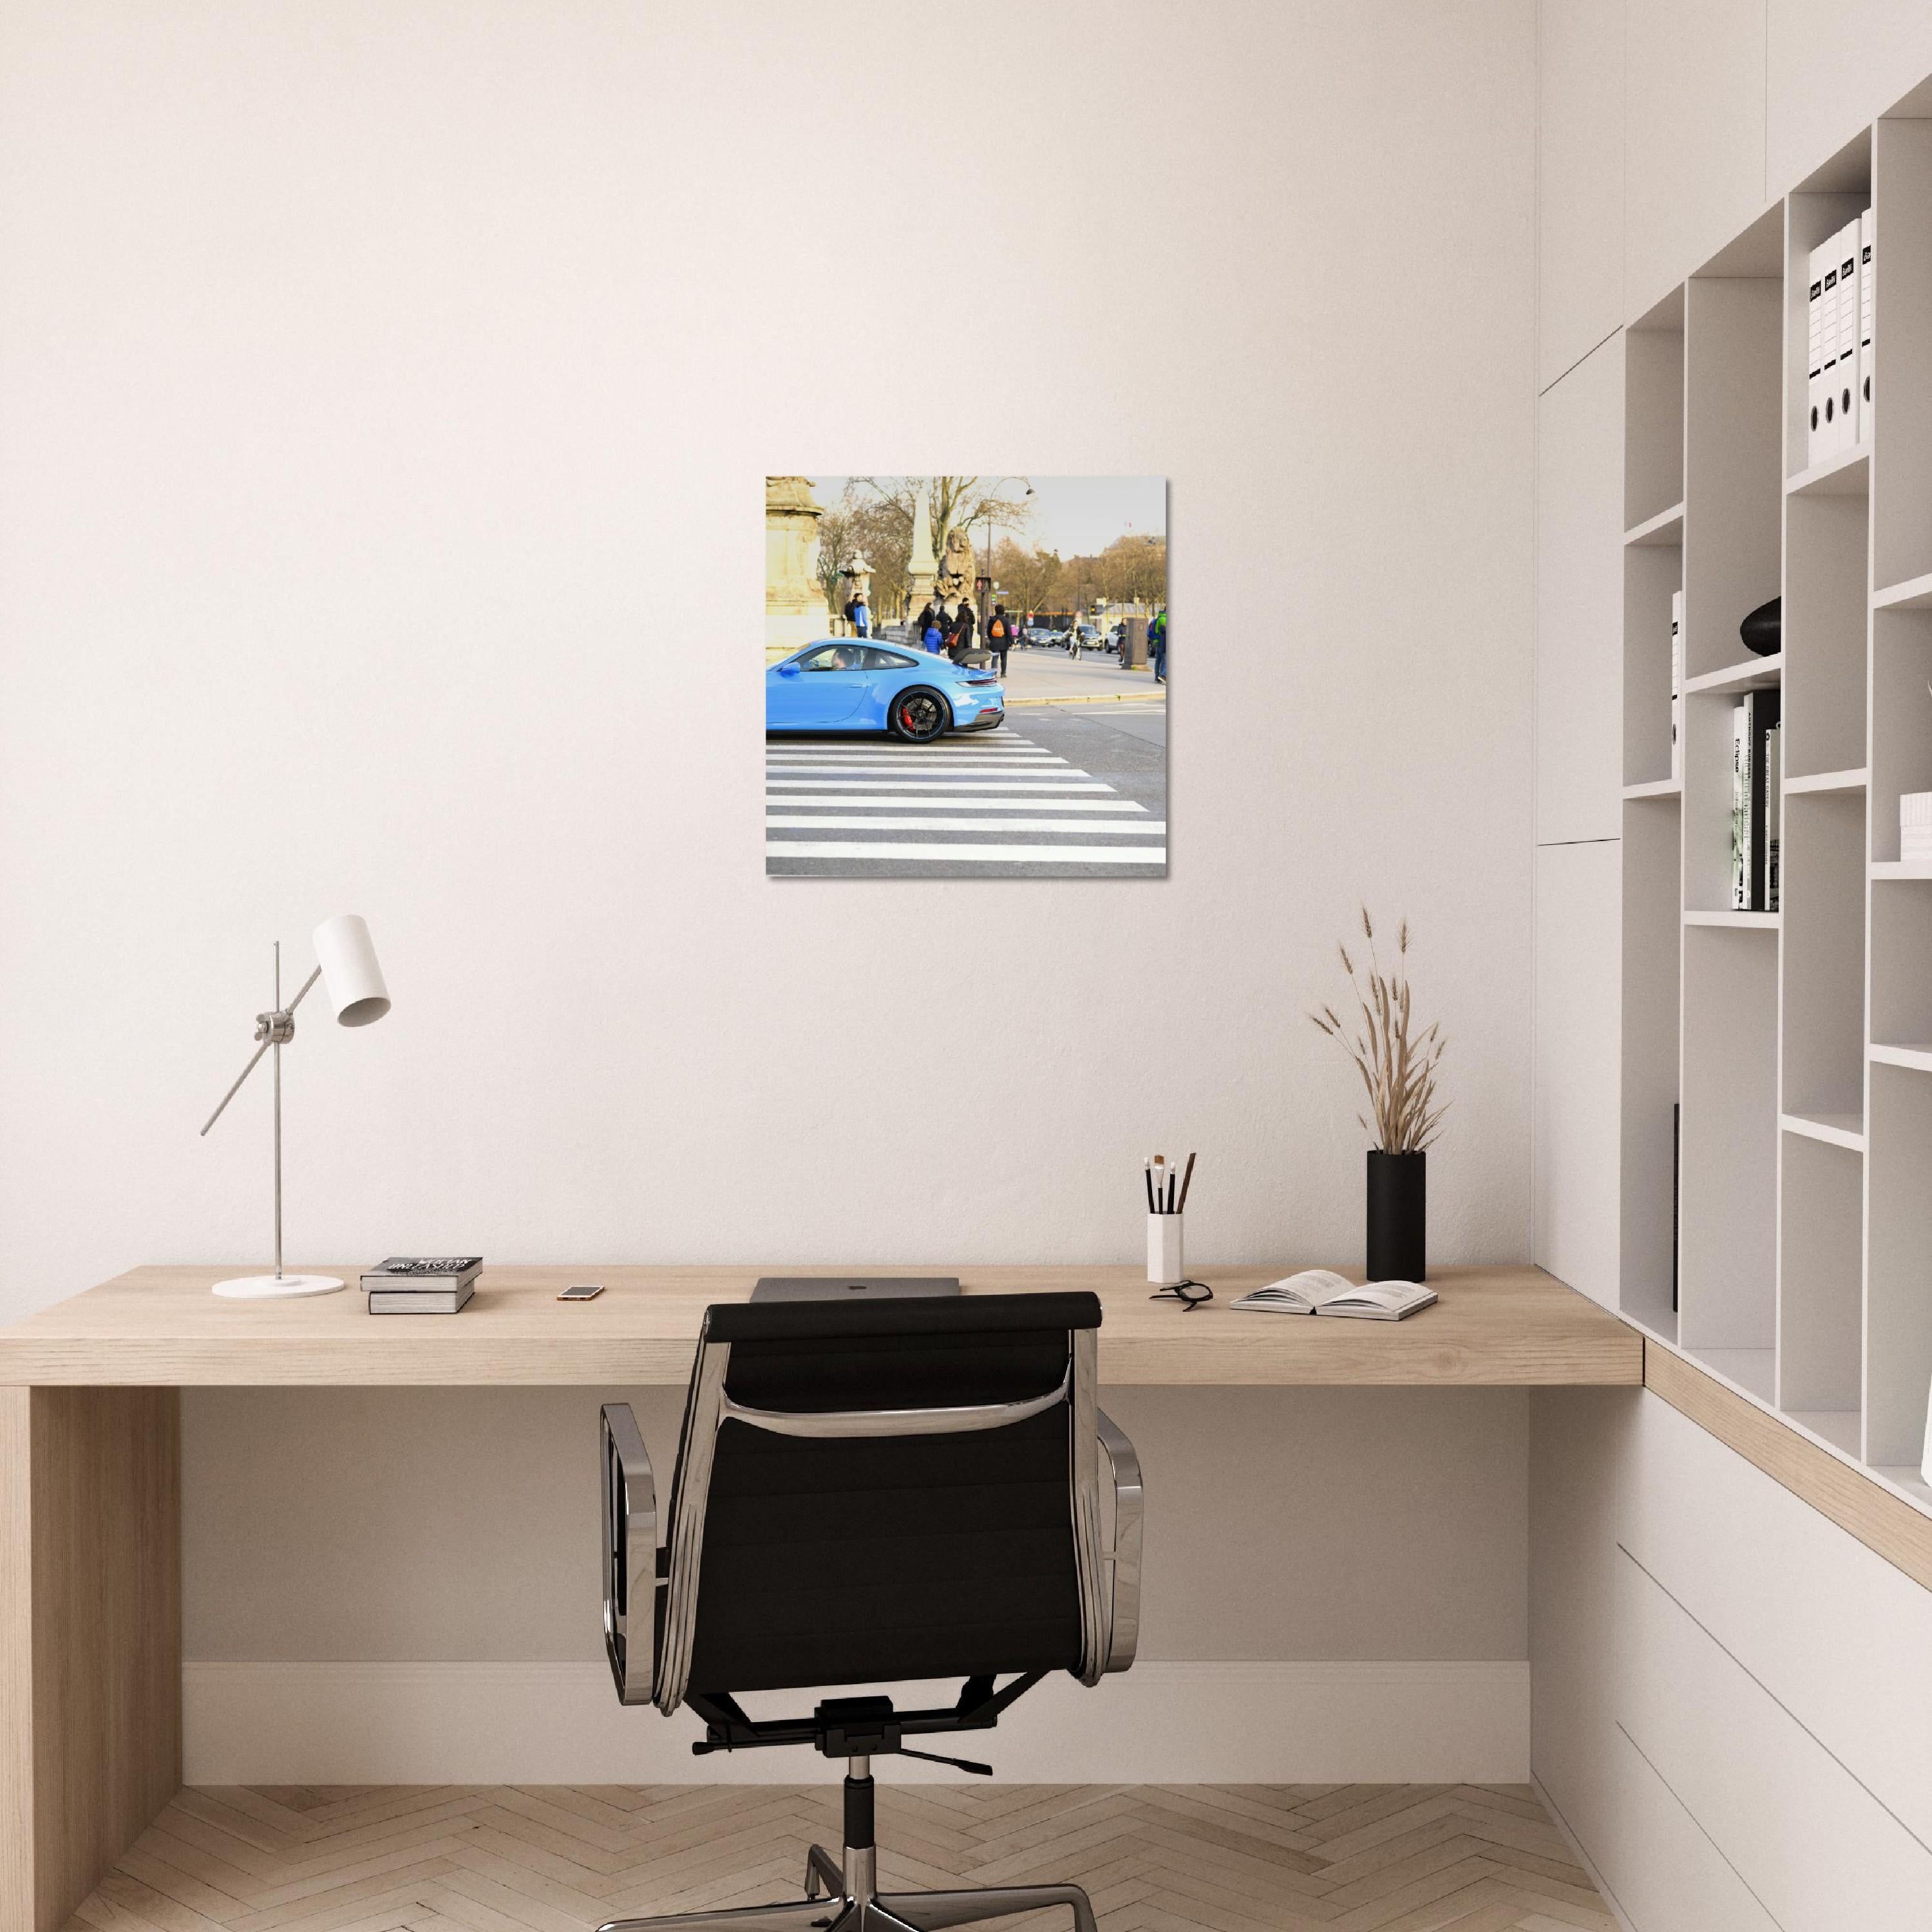 Poster mural métallique - Porsche GT3 – Photographie de voiture – Poster photo, poster XXL, photographie murale et des posters muraux unique au monde. La boutique de posters créée par Yann Peccard un Photographe français.